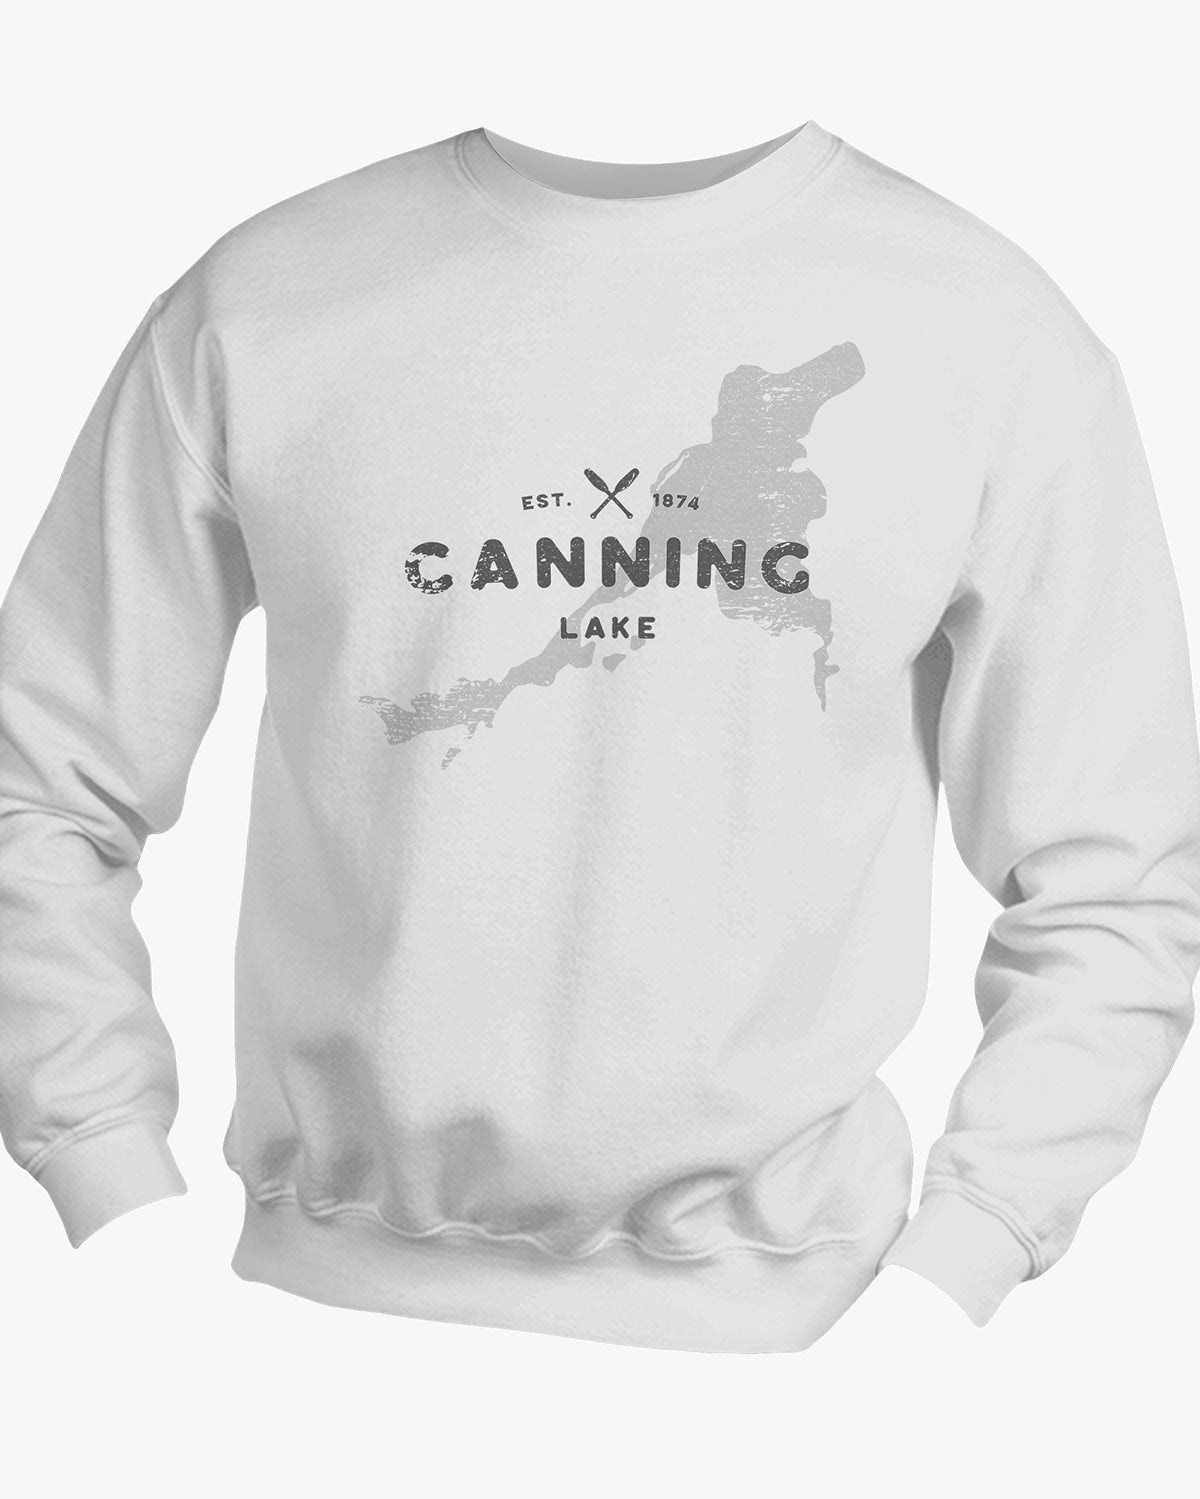 Lake Series - Canning Lake - Sweater